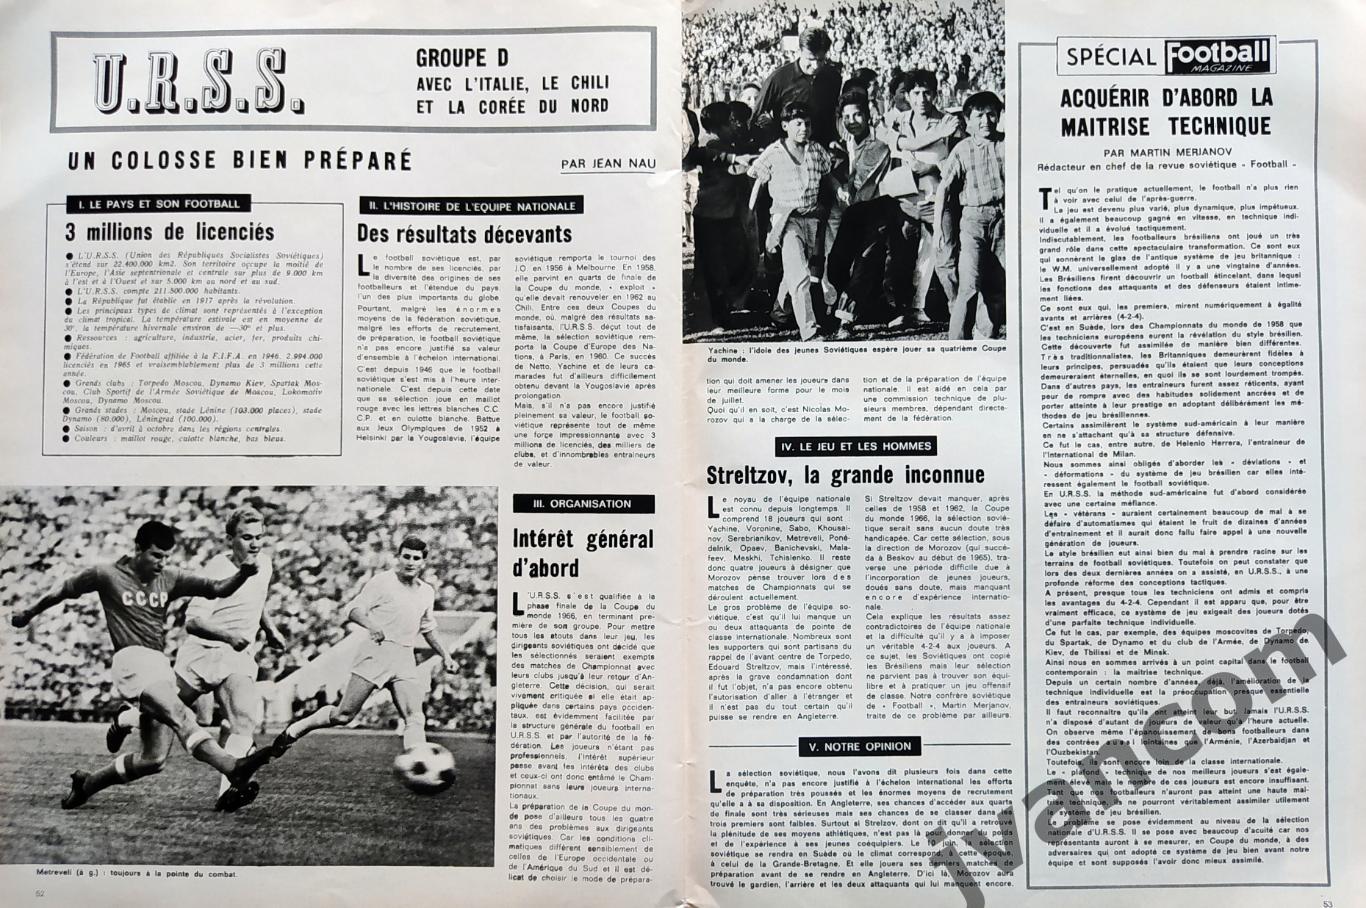 Журнал FOOTBALL MAGAZINE №77 за 1966 год. 1